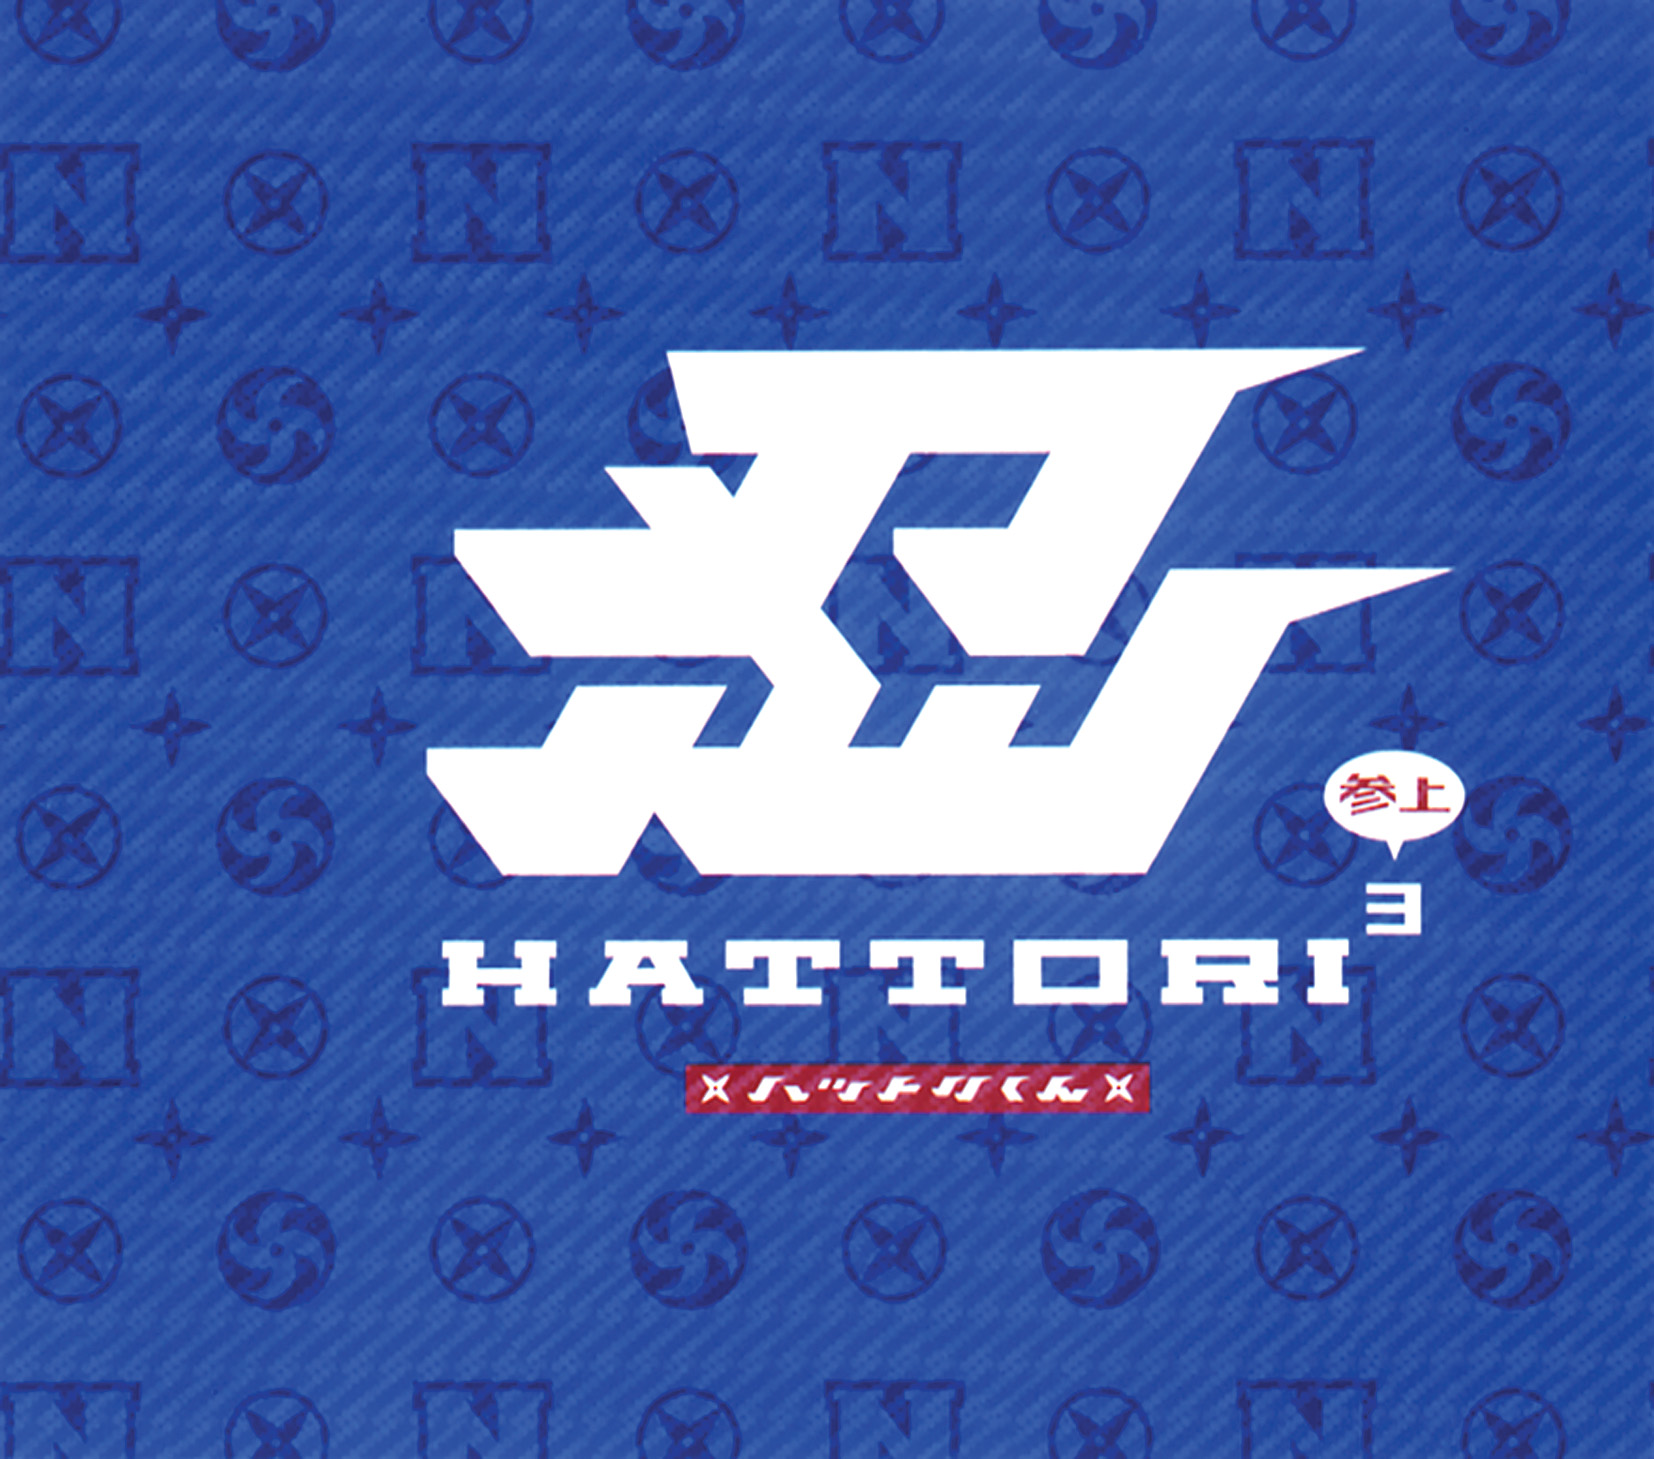 HATTORI 3(参上)